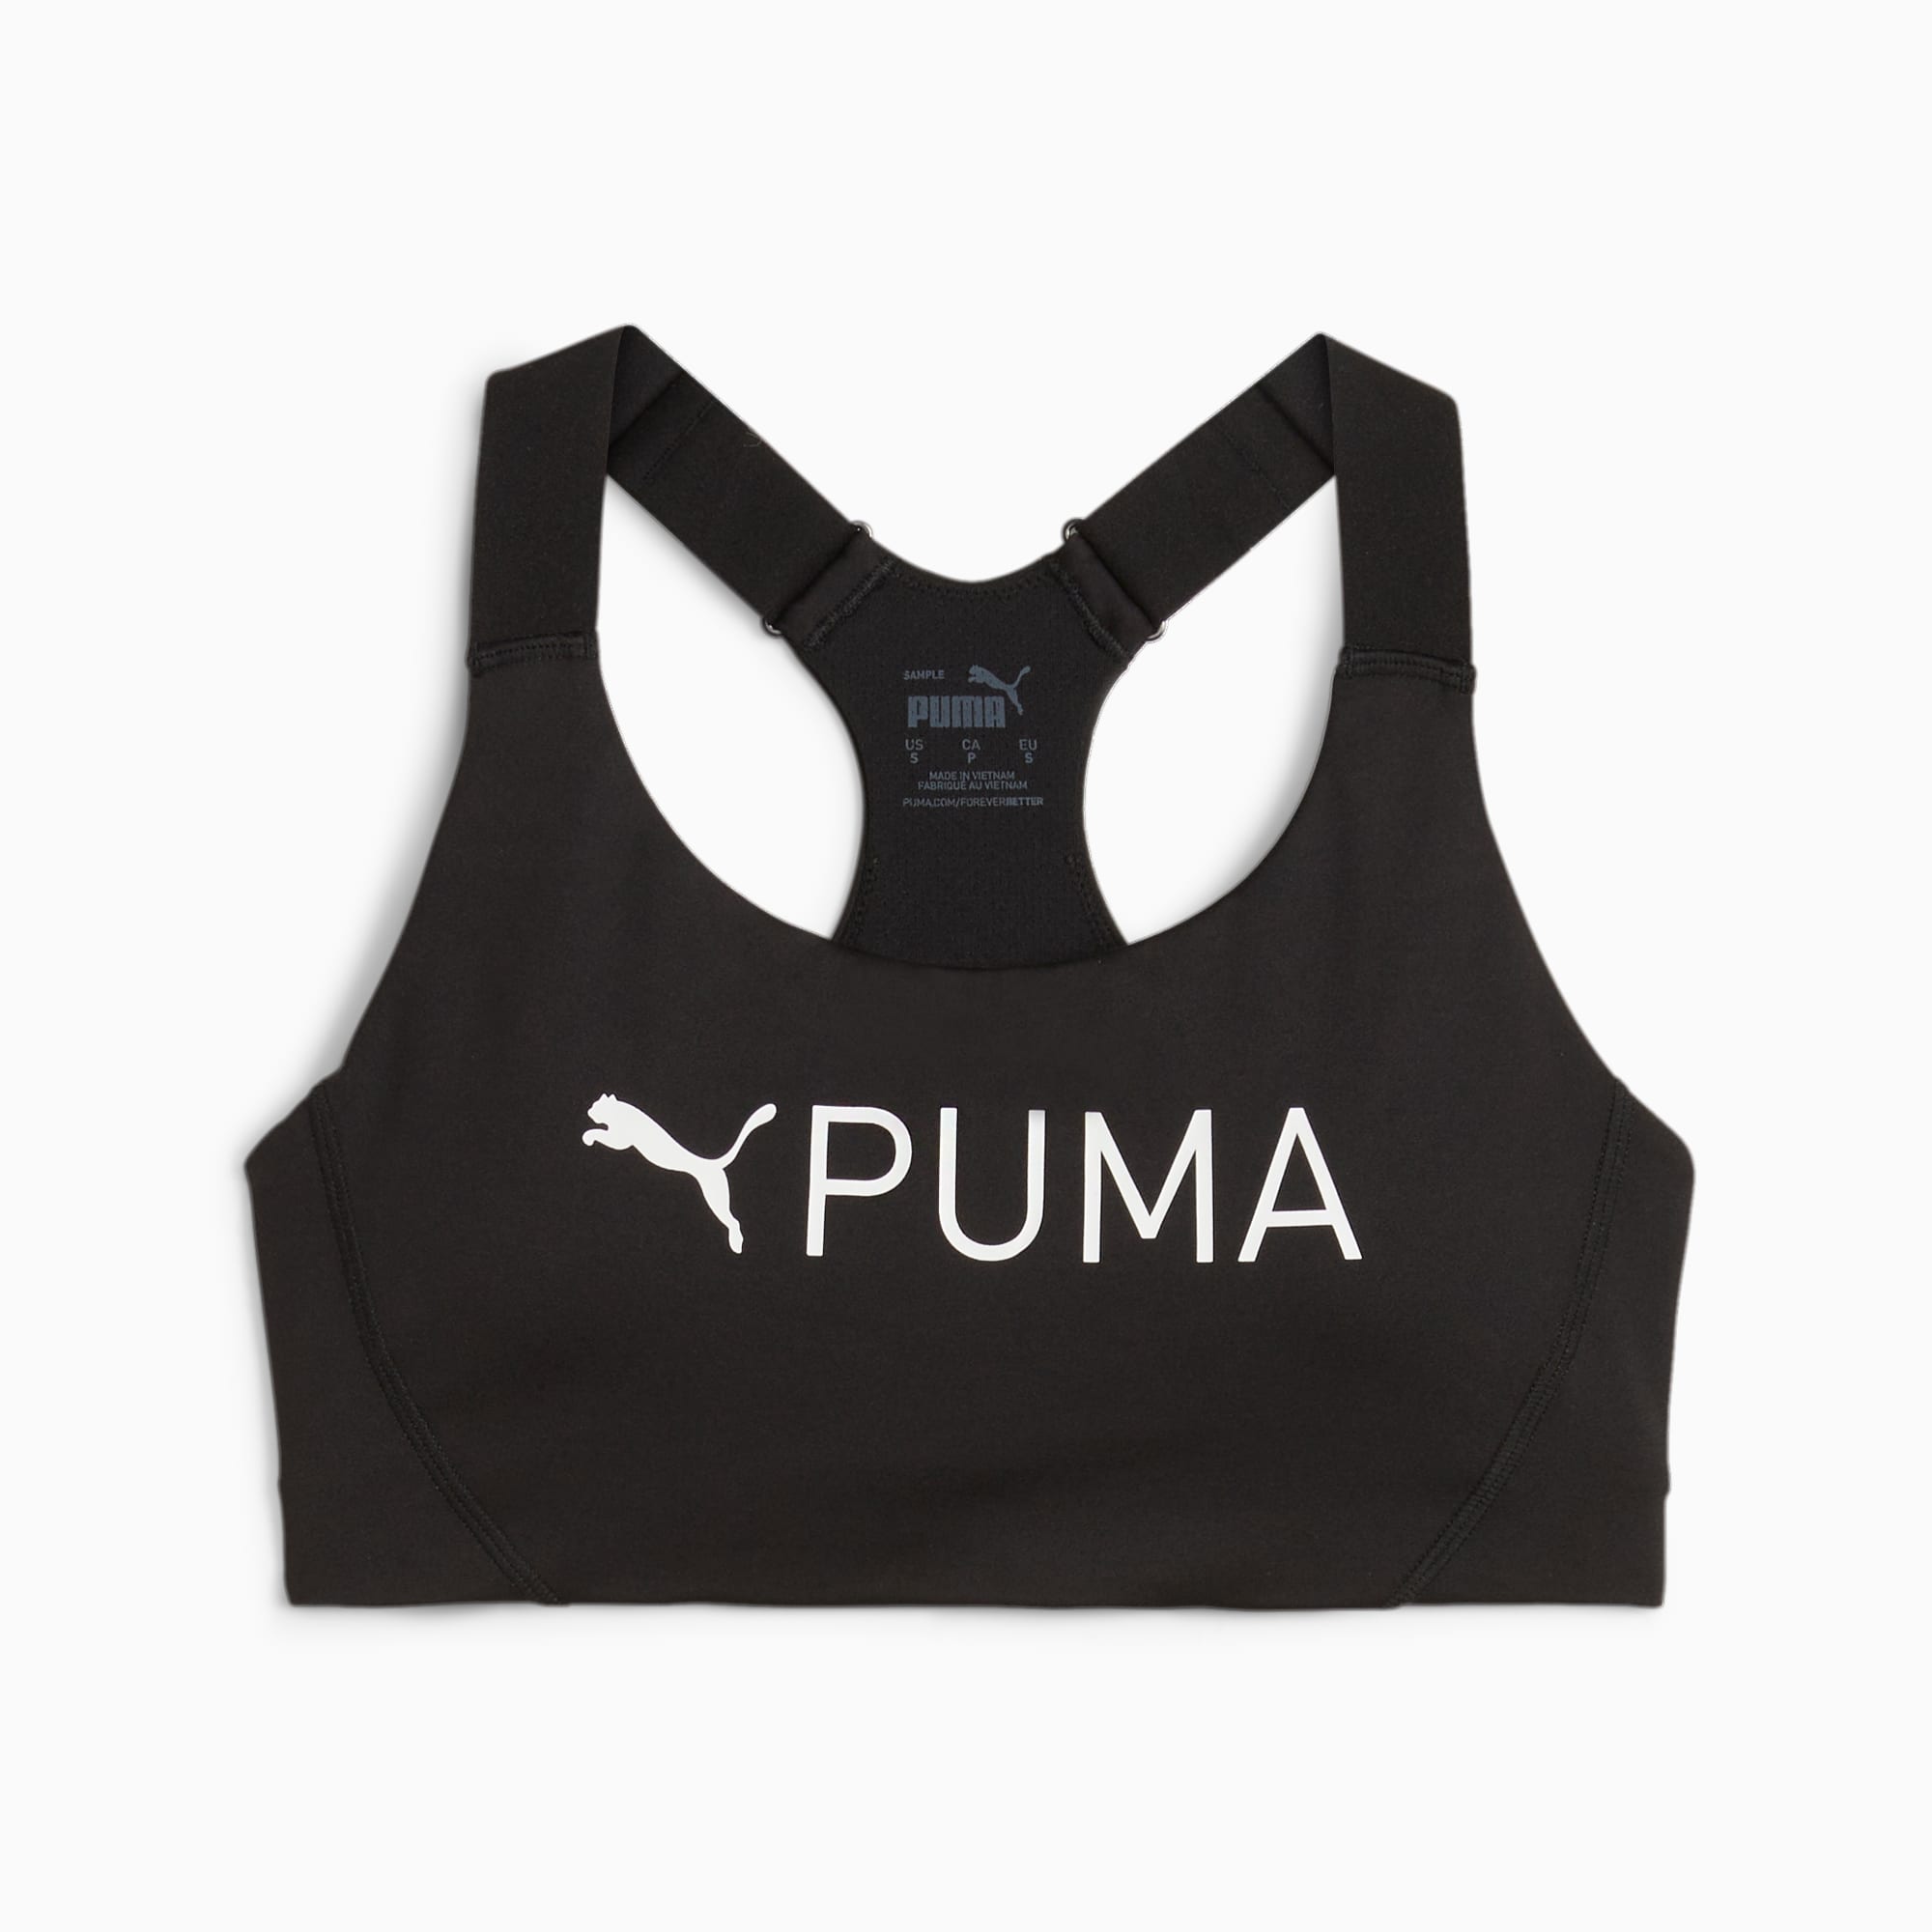 Puma Women's 4Keeps Bra M Underwear Top, Black (Black/White